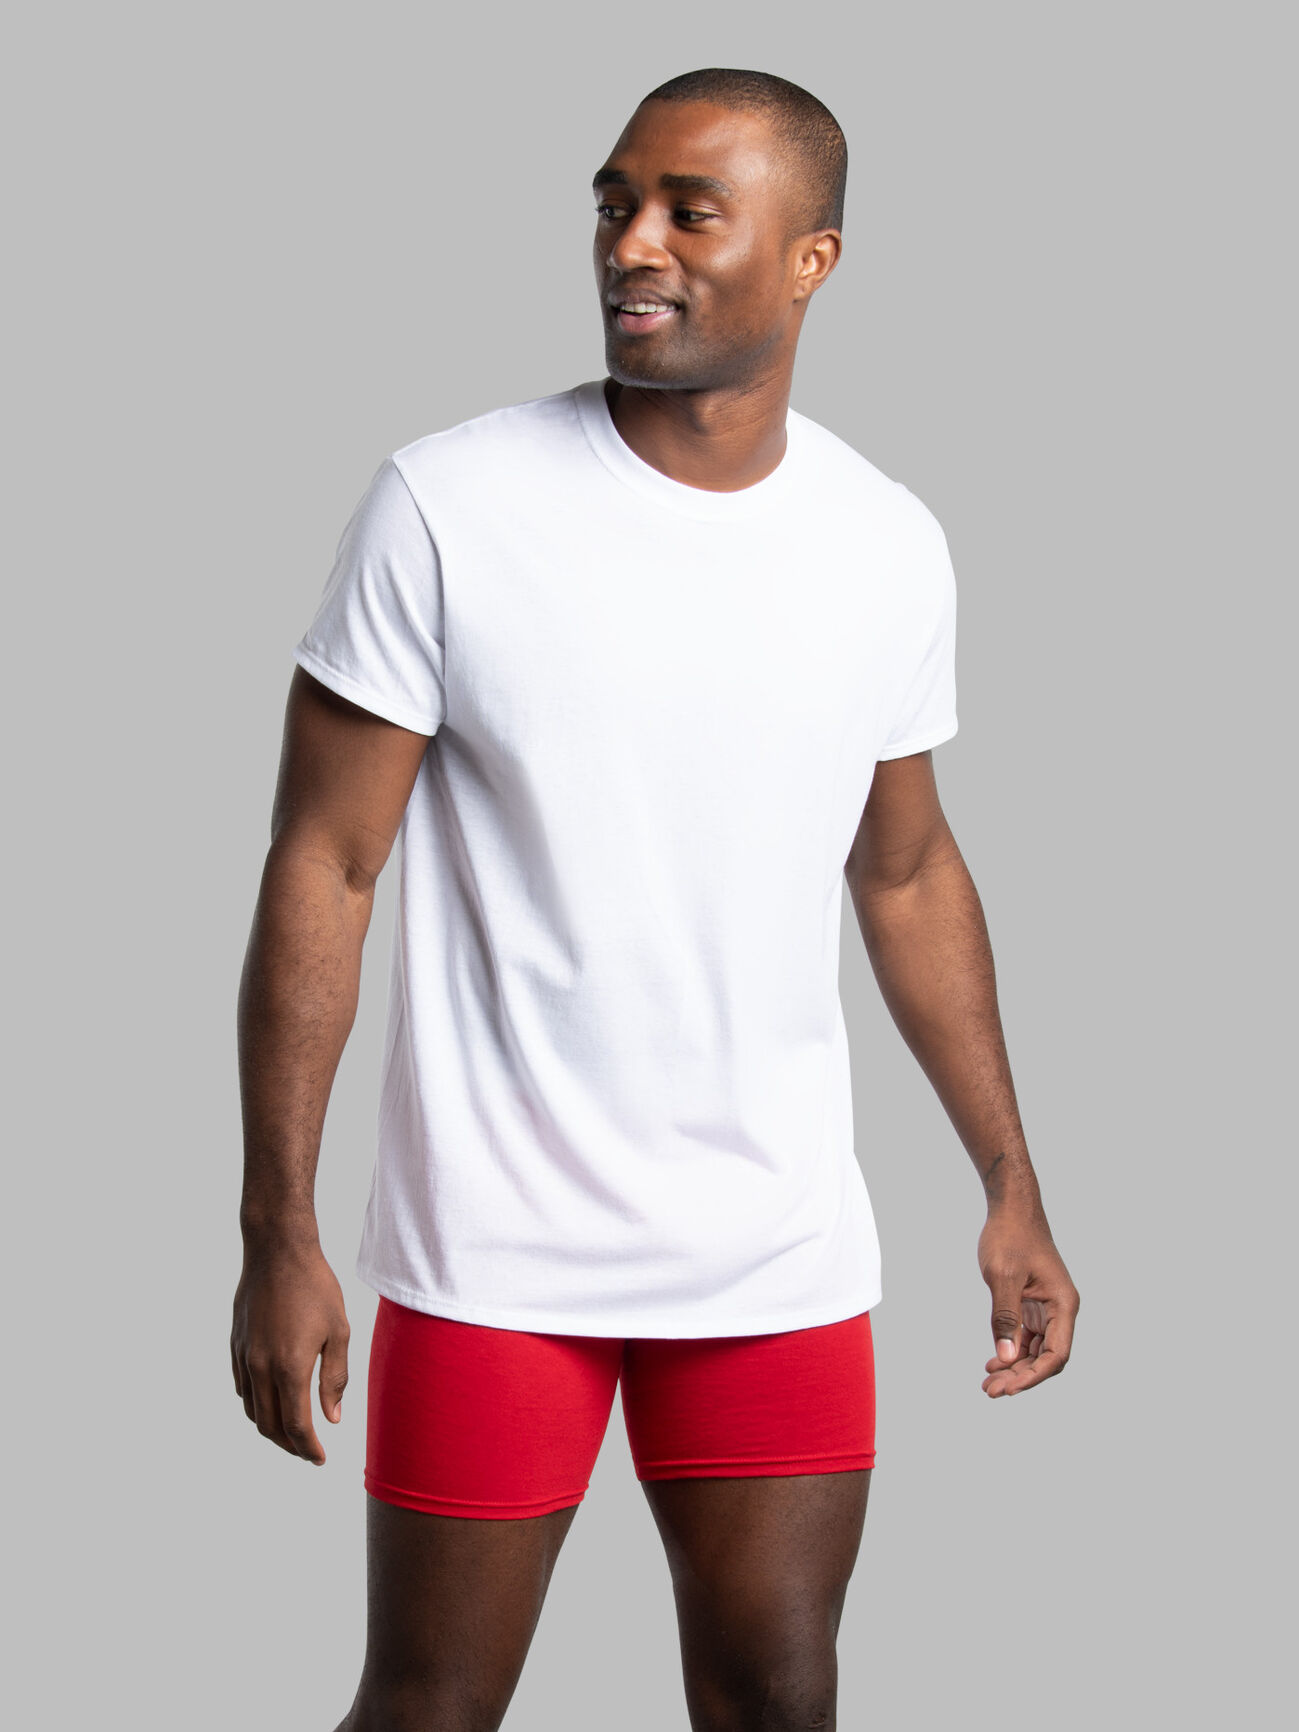 Hot Men's T-Shirt GYM Workout Fitness Cotton Sport Short Sleeve